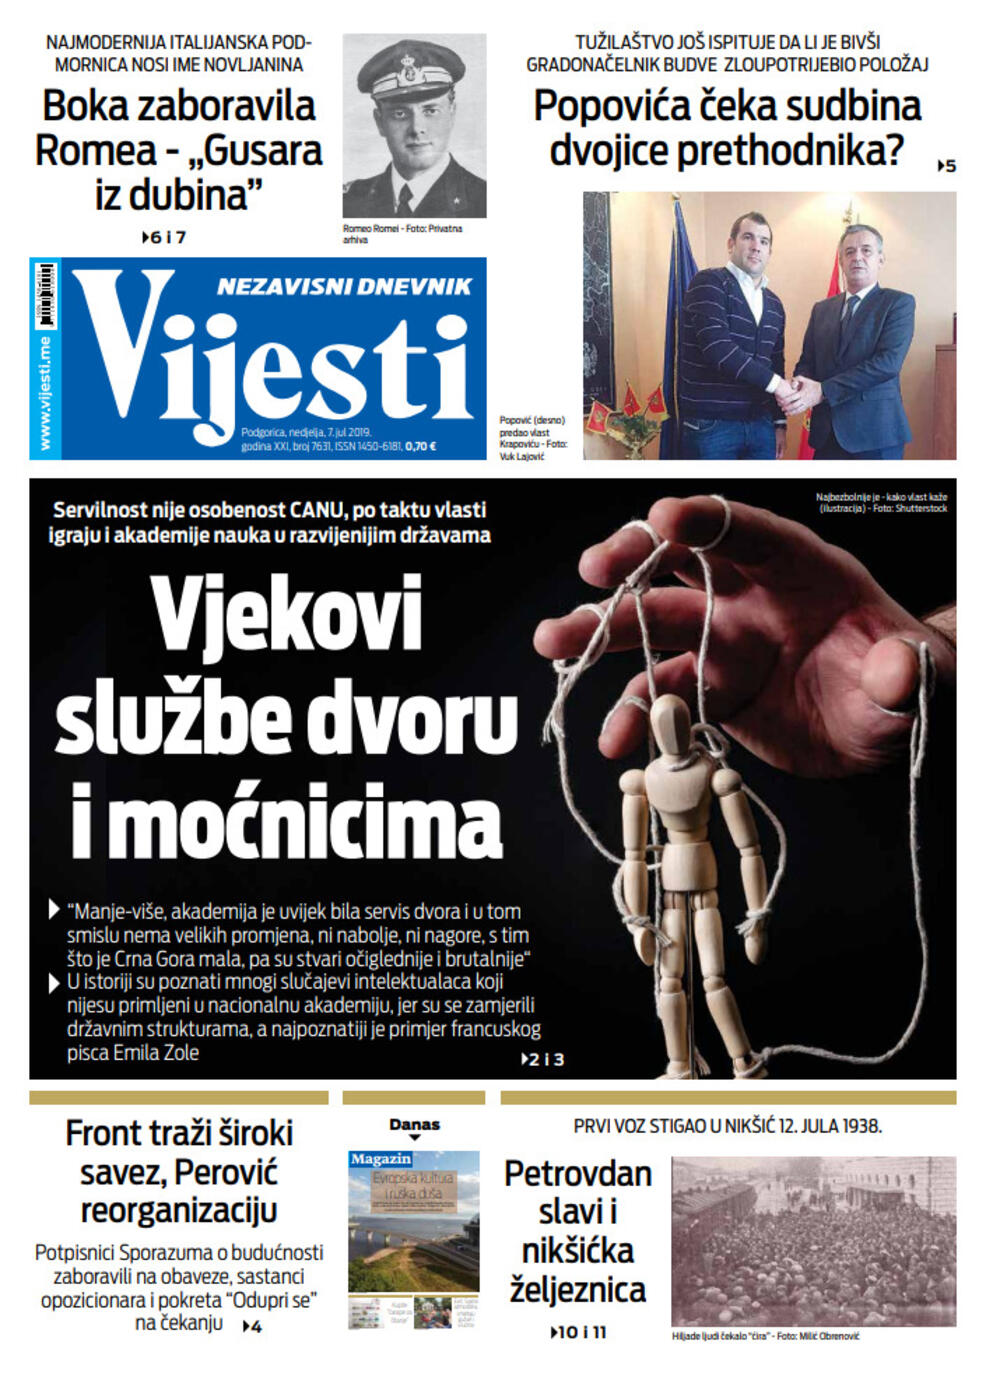 Naslovna strana "Vijesti" za 7. jul, Foto: Vijesti